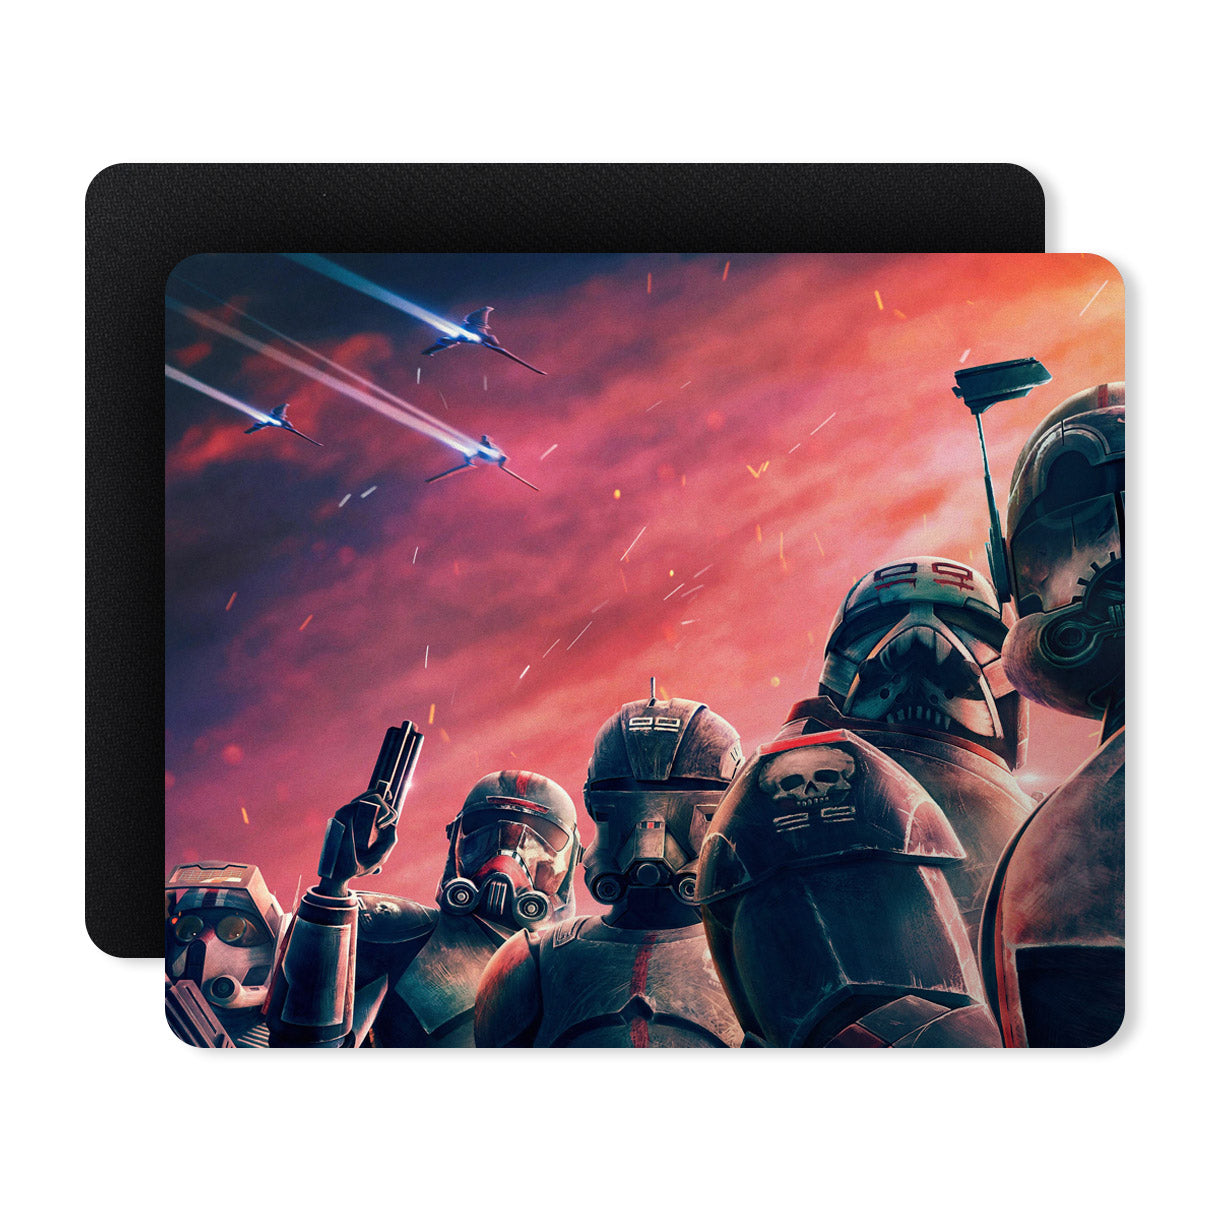 Wars Man Superhero Designer Printed Premium Mouse pad (9 in x 7.5 in)